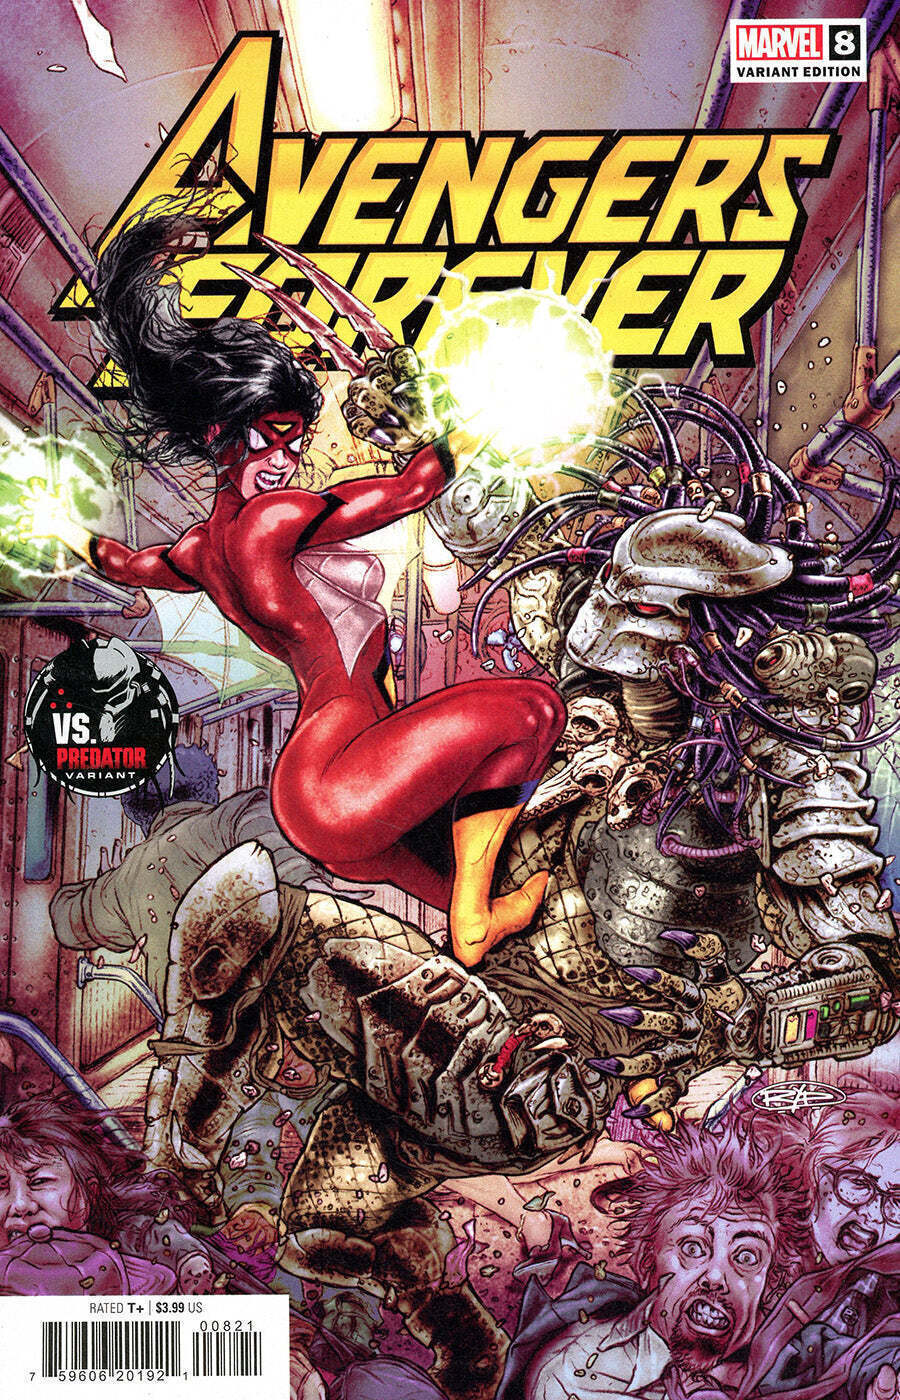 Avengers Forever (2nd Series) #8A VF/NM; Marvel | vs Predator variant - we combi